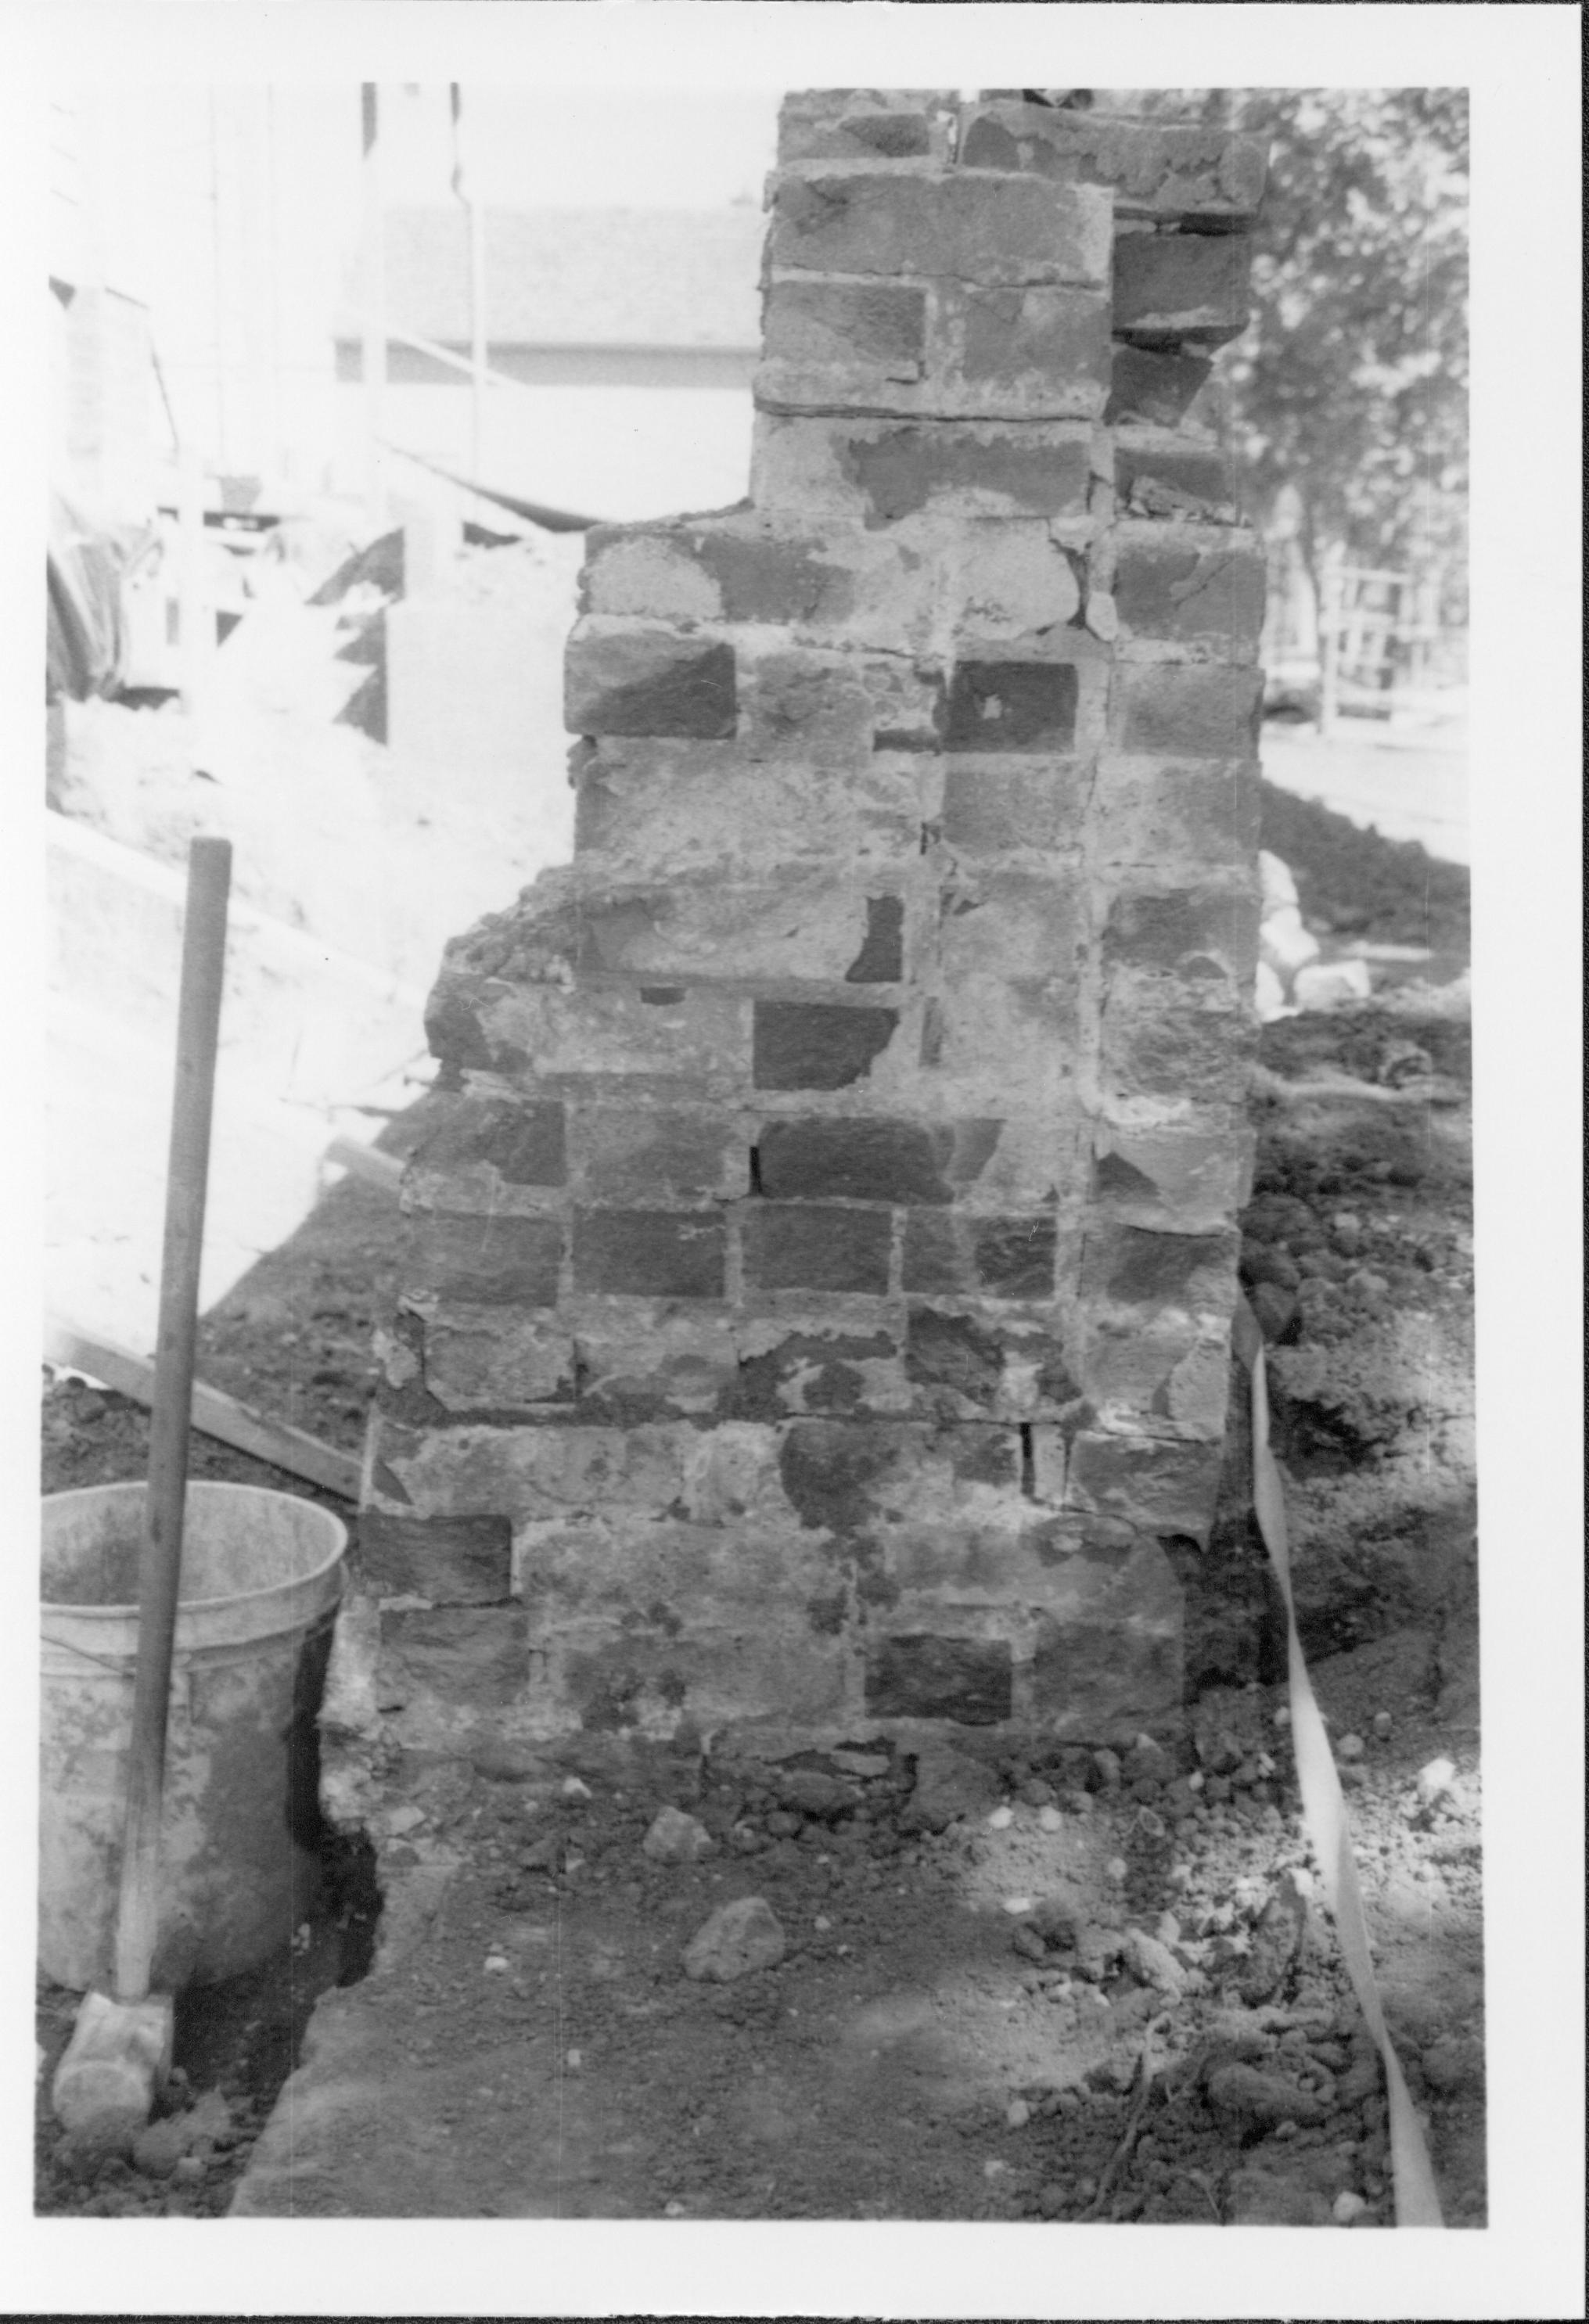 NA Lincoln, Home, Restoration, brick, wall